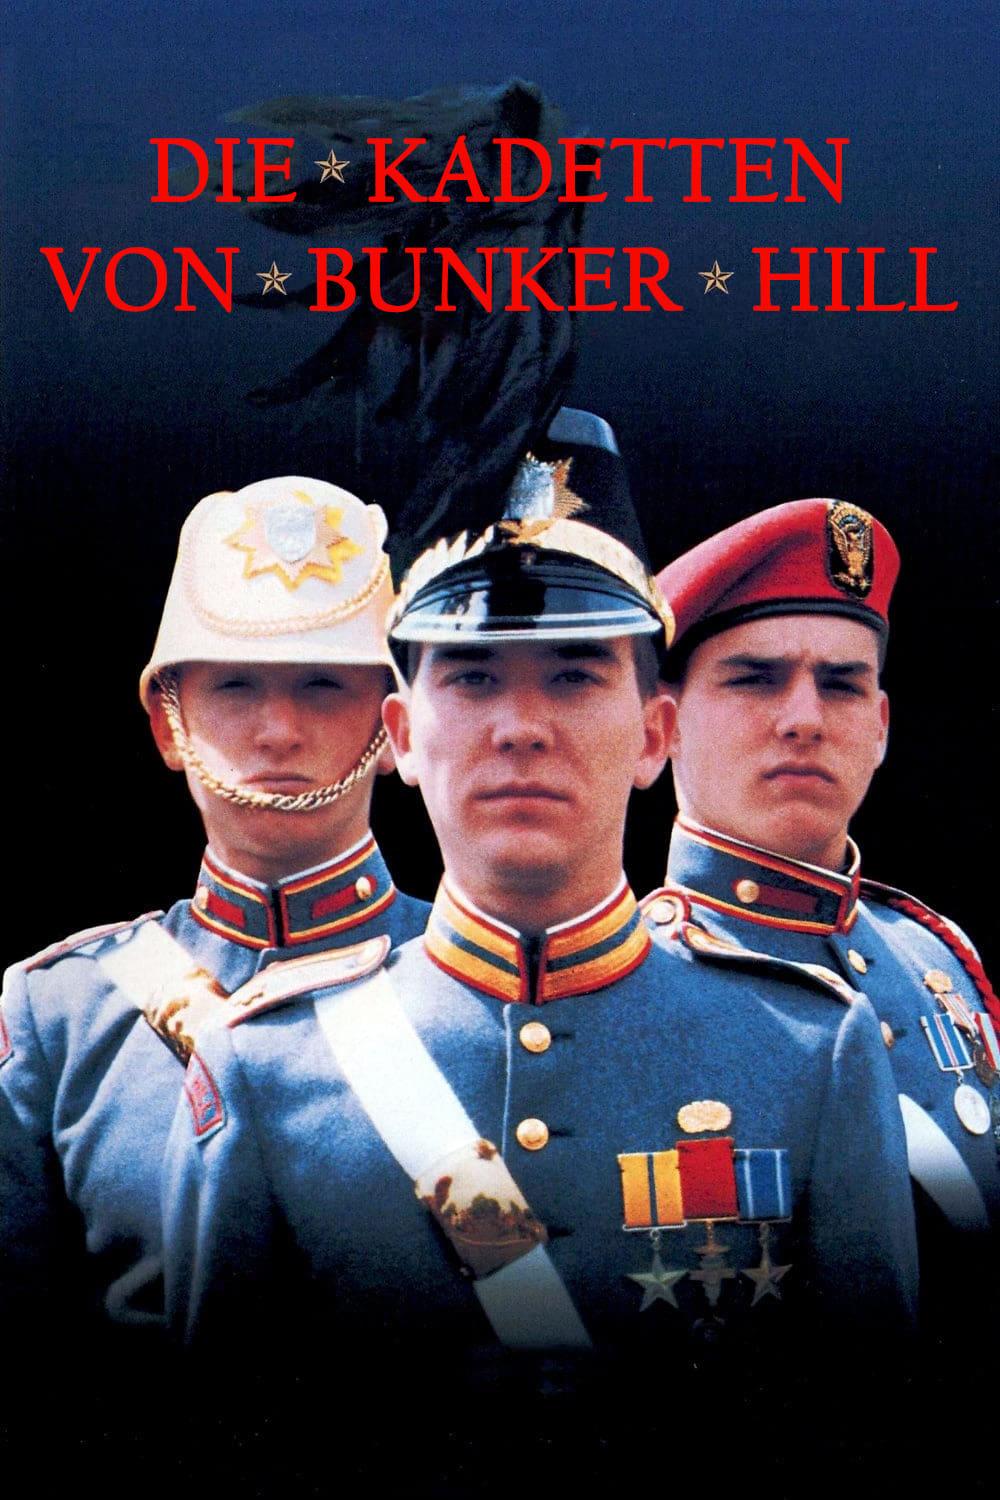 Die Kadetten von Bunker Hill poster